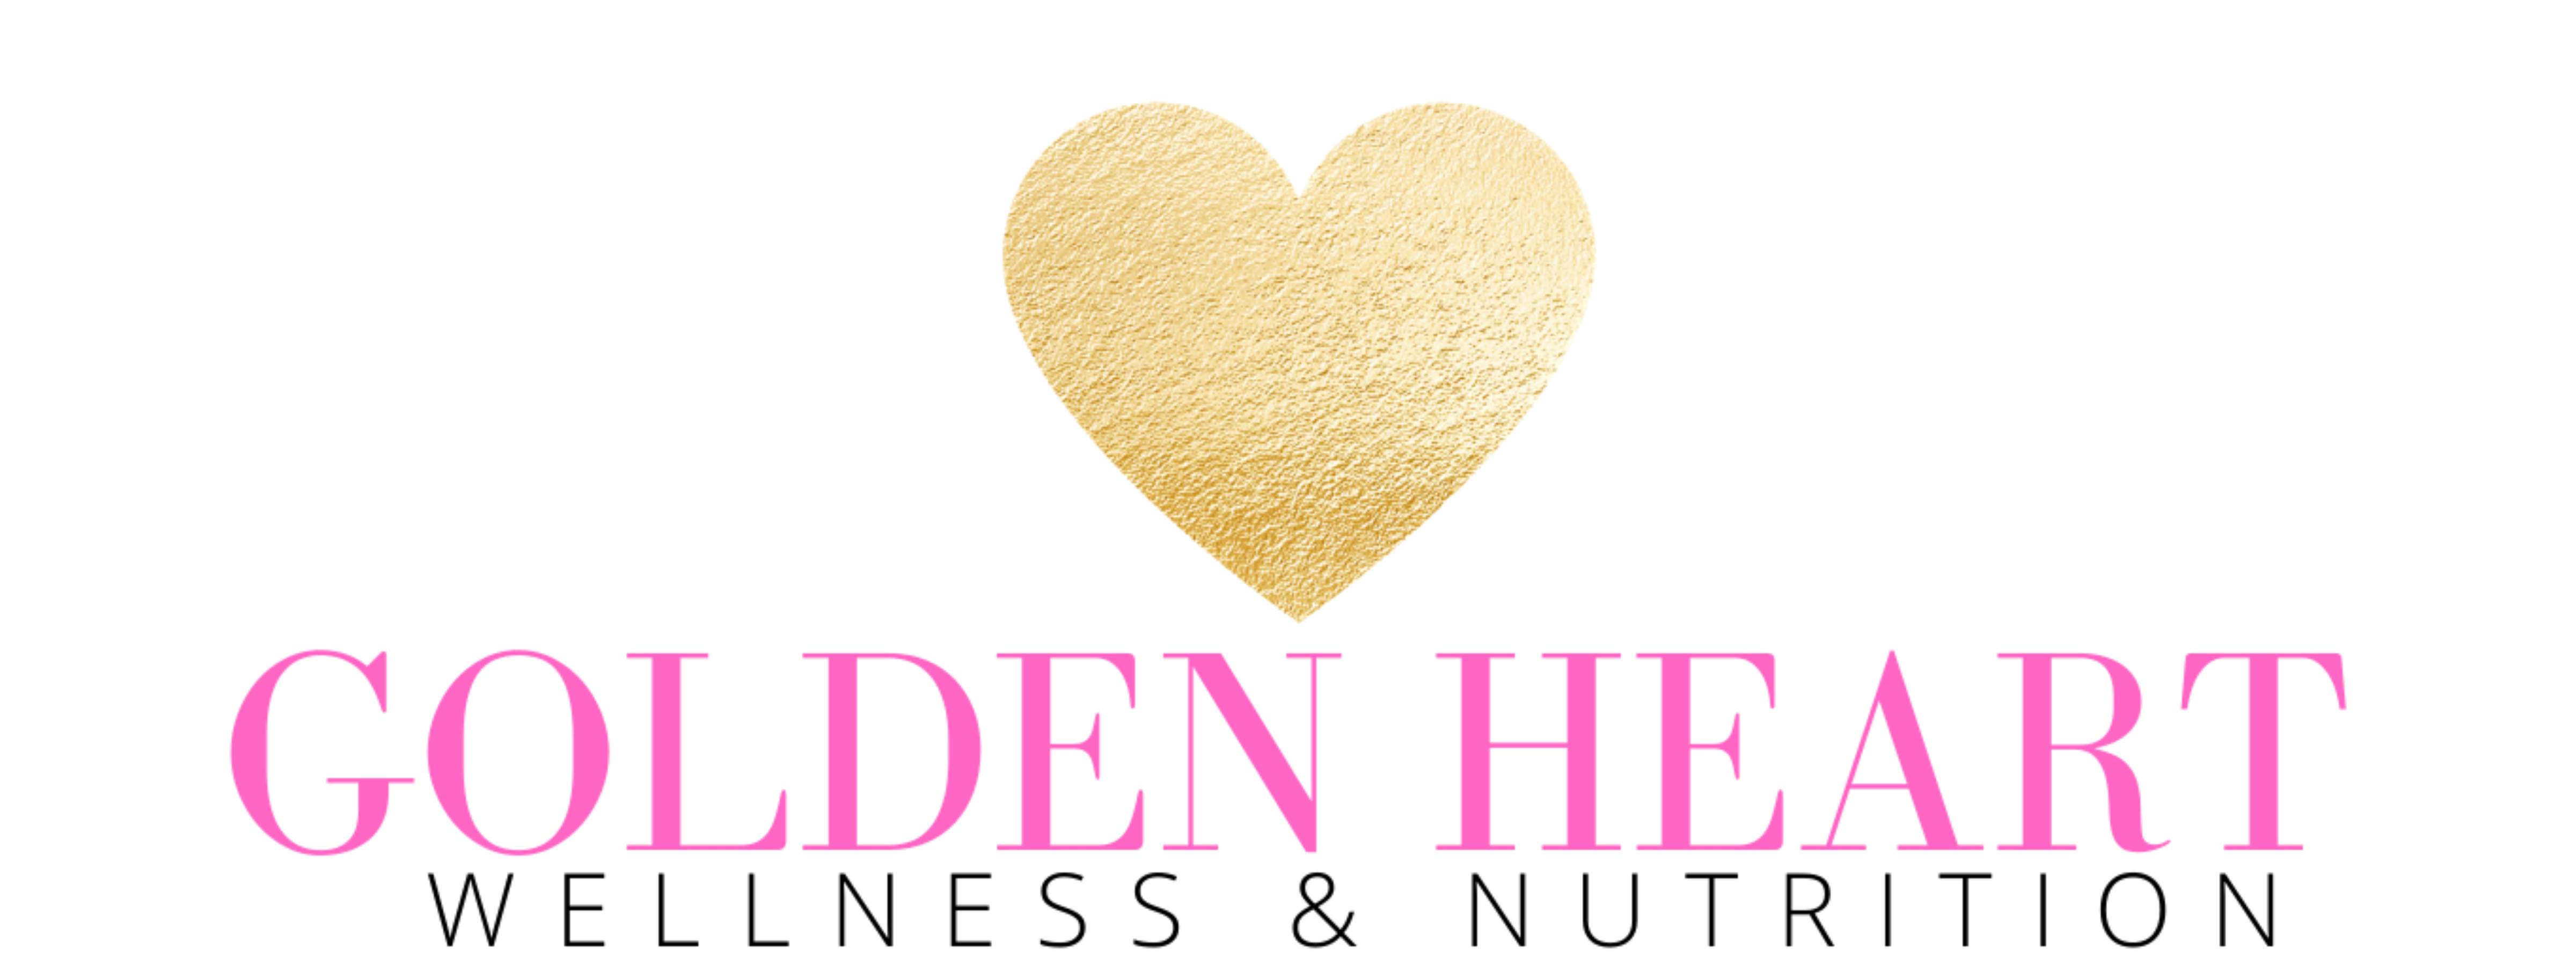 Golden Heart Wellness